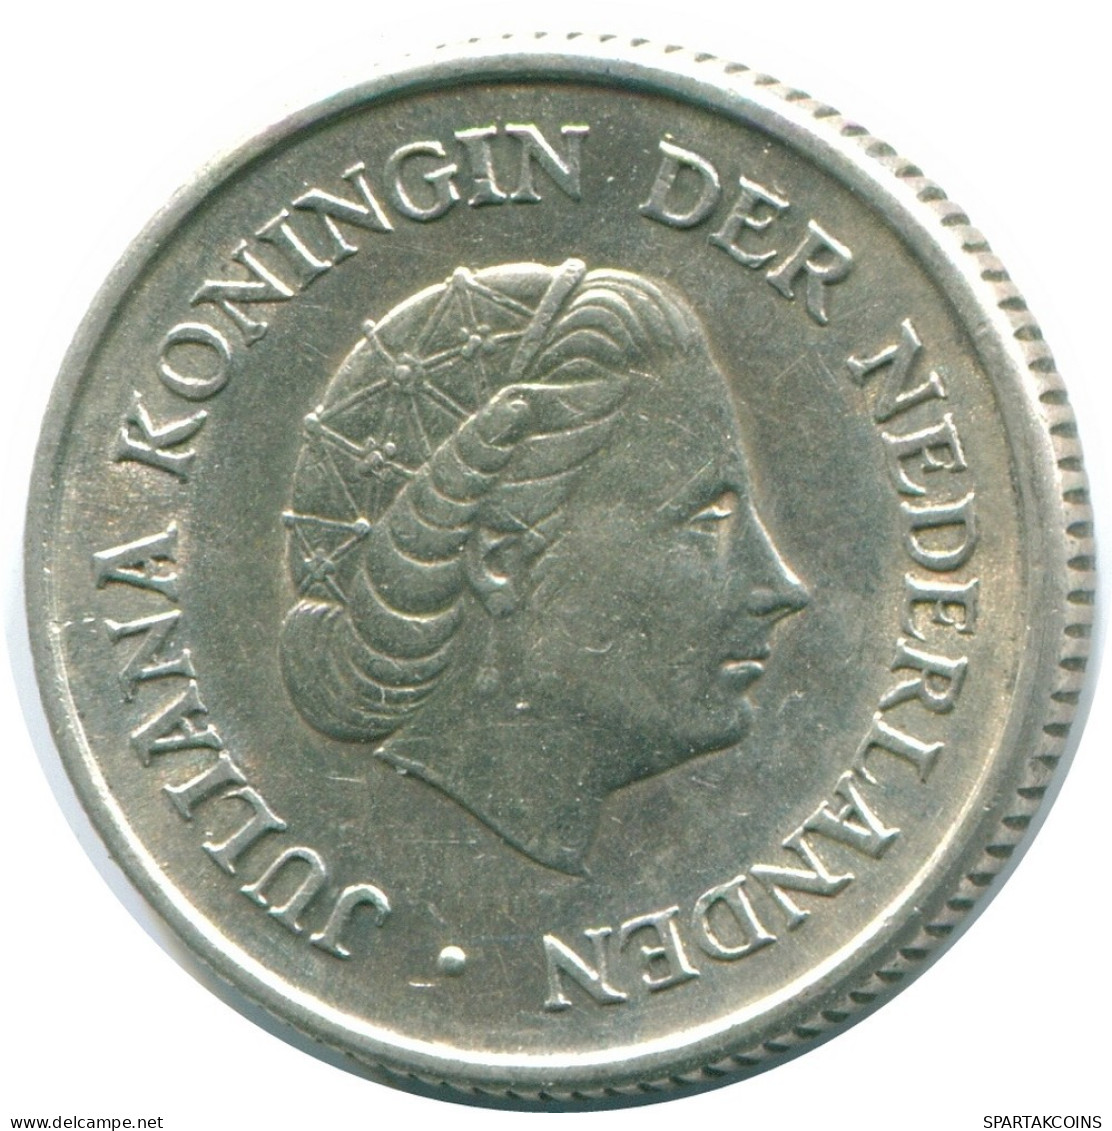 1/4 GULDEN 1967 NIEDERLÄNDISCHE ANTILLEN SILBER Koloniale Münze #NL11467.4.D.A - Niederländische Antillen